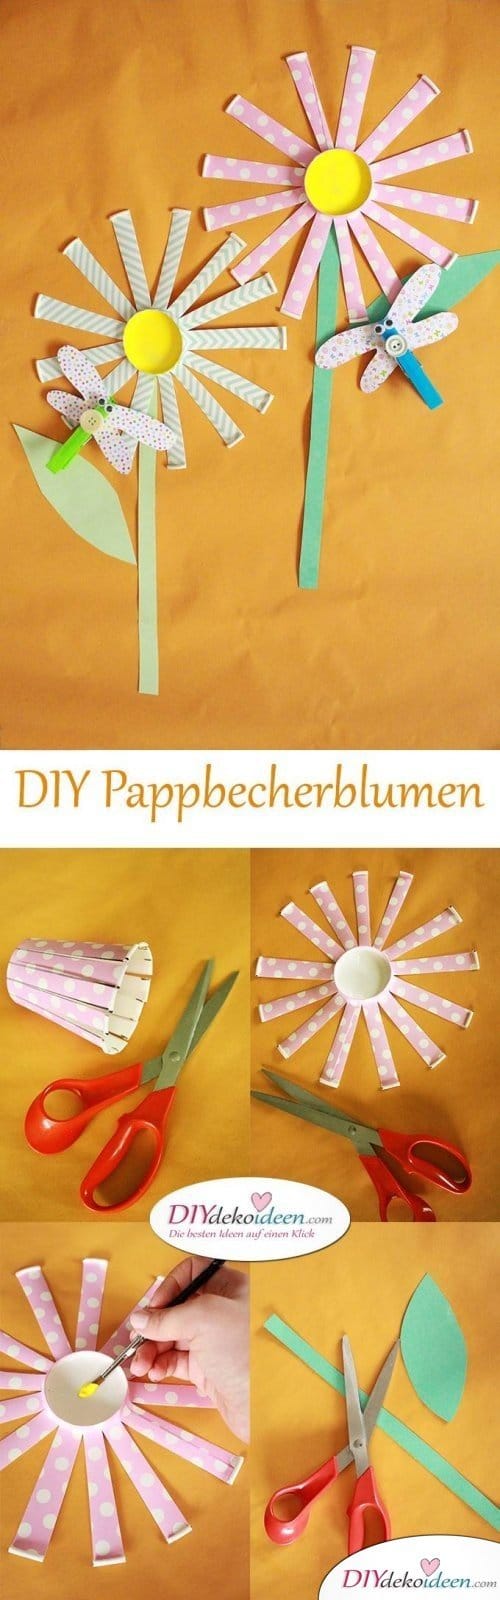 Pappbecherblumen basteln mit Kleinkindern - DIY Bastelideen für die Ferien